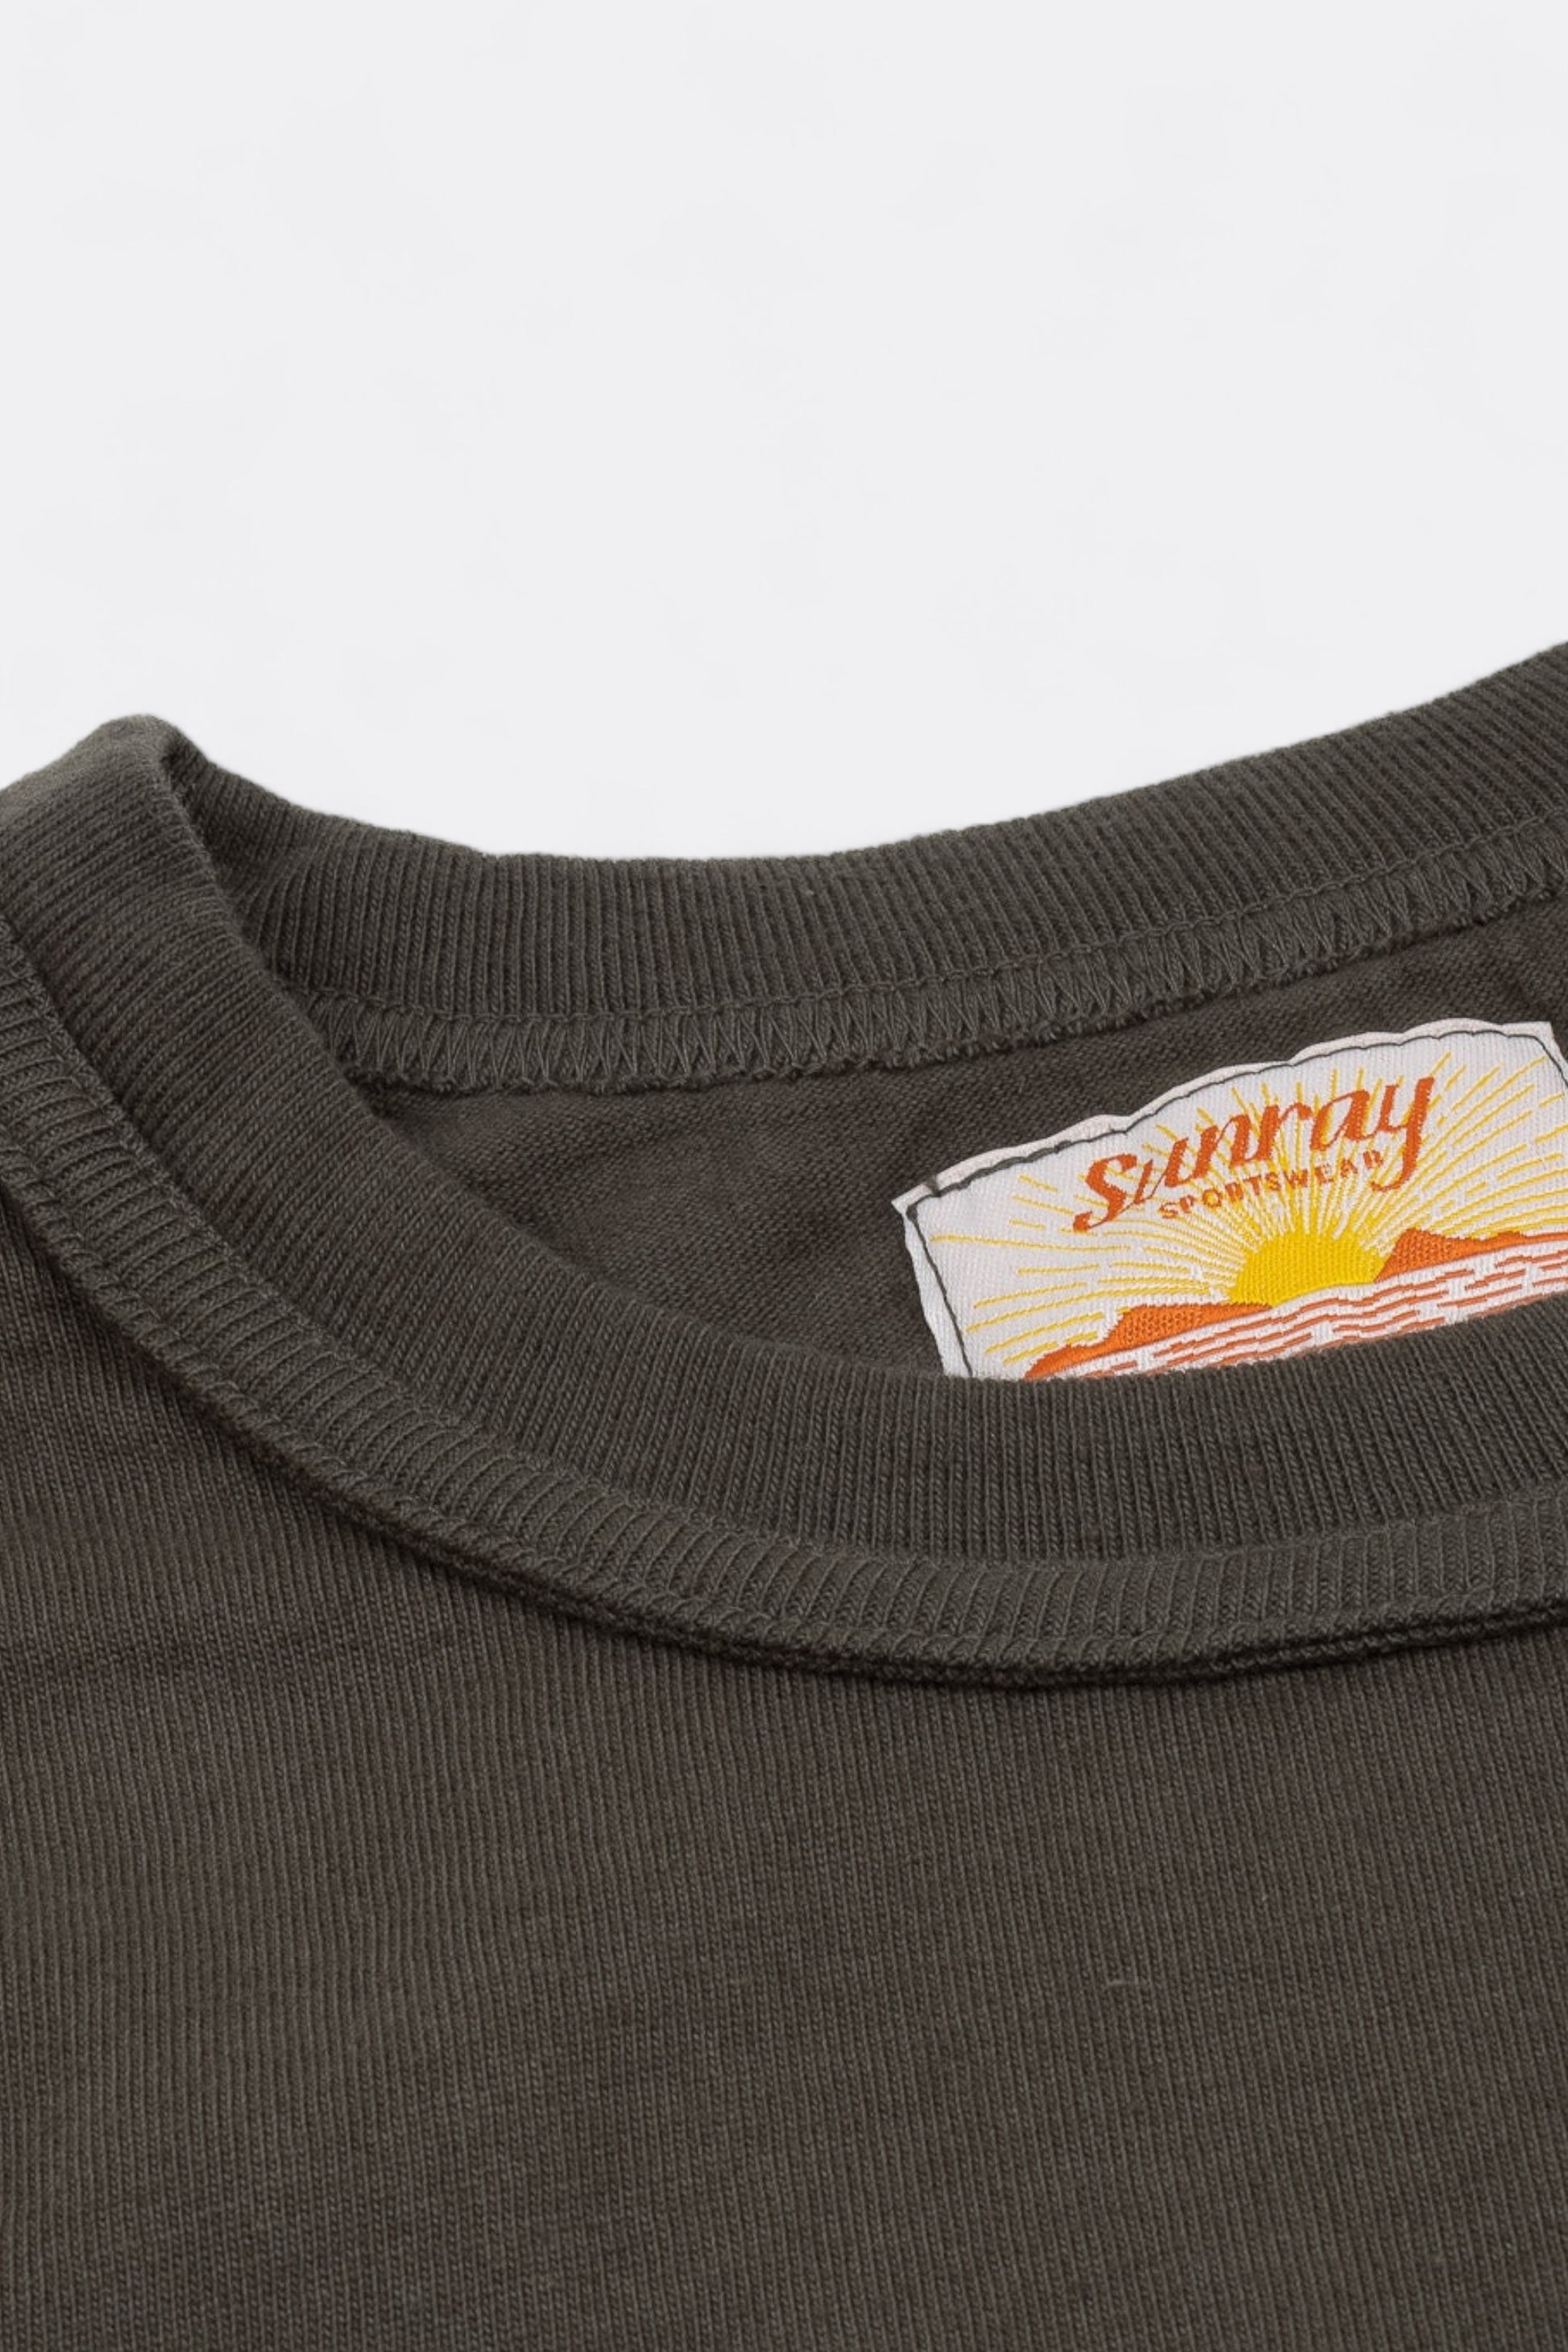 Sunray Sportswear - Haleiwa T-Shirt (Beluga)